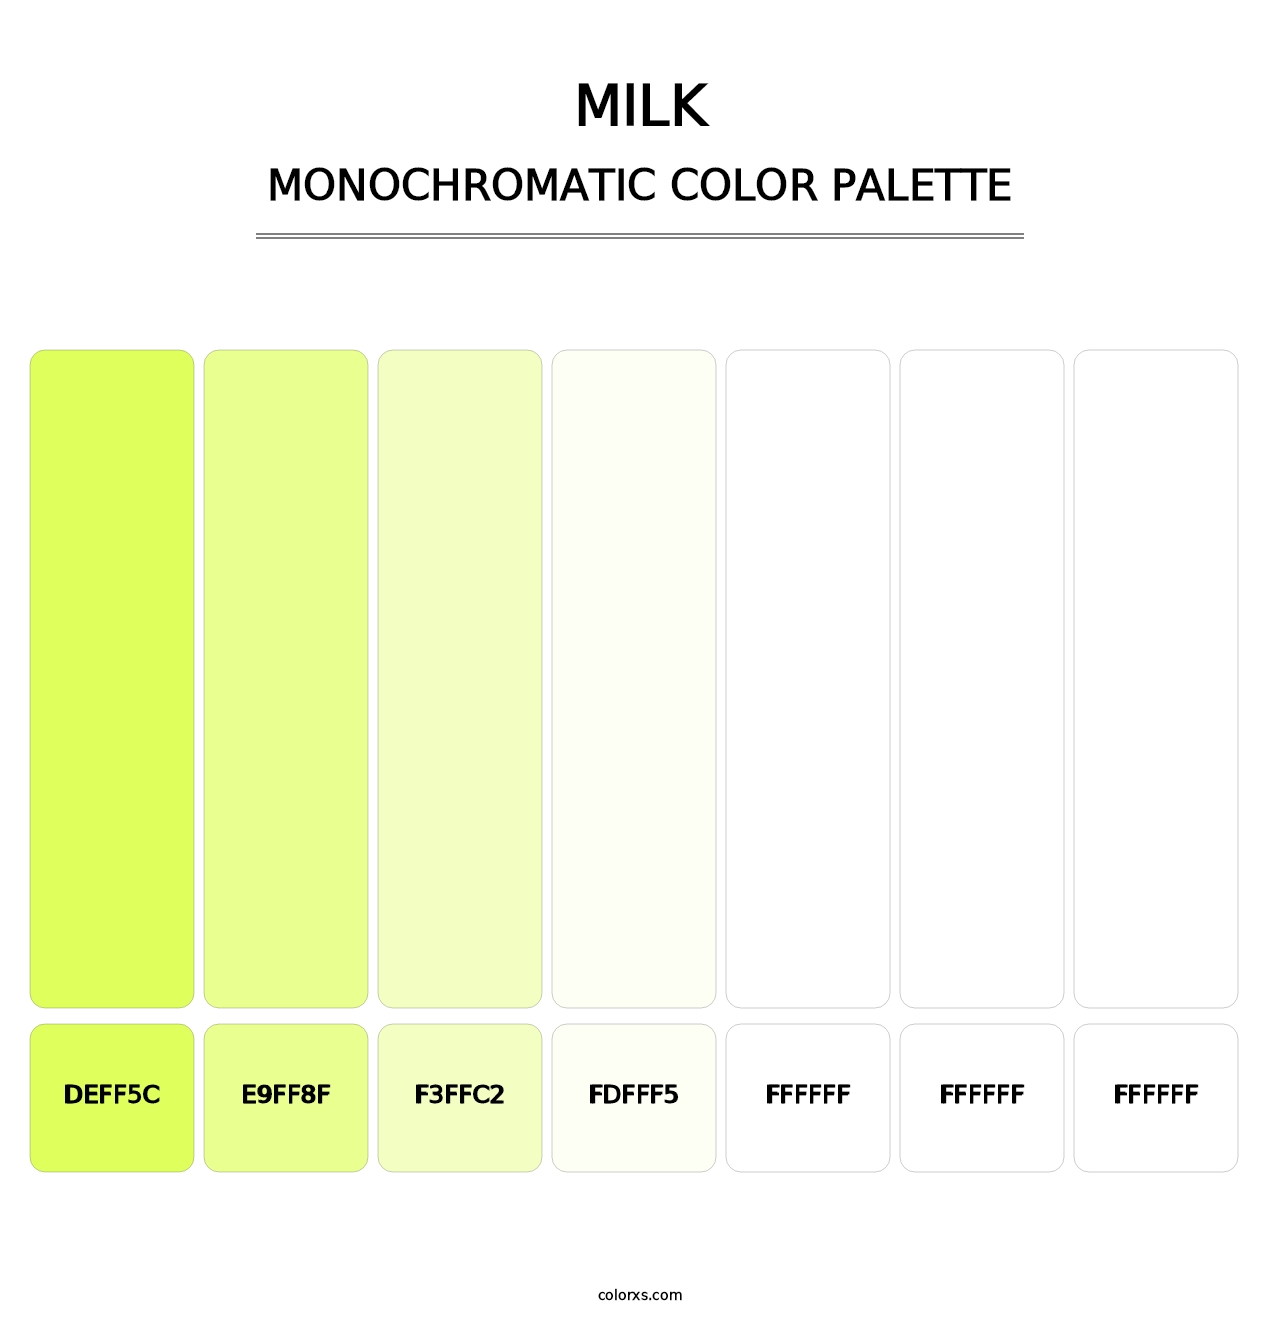 Milk - Monochromatic Color Palette